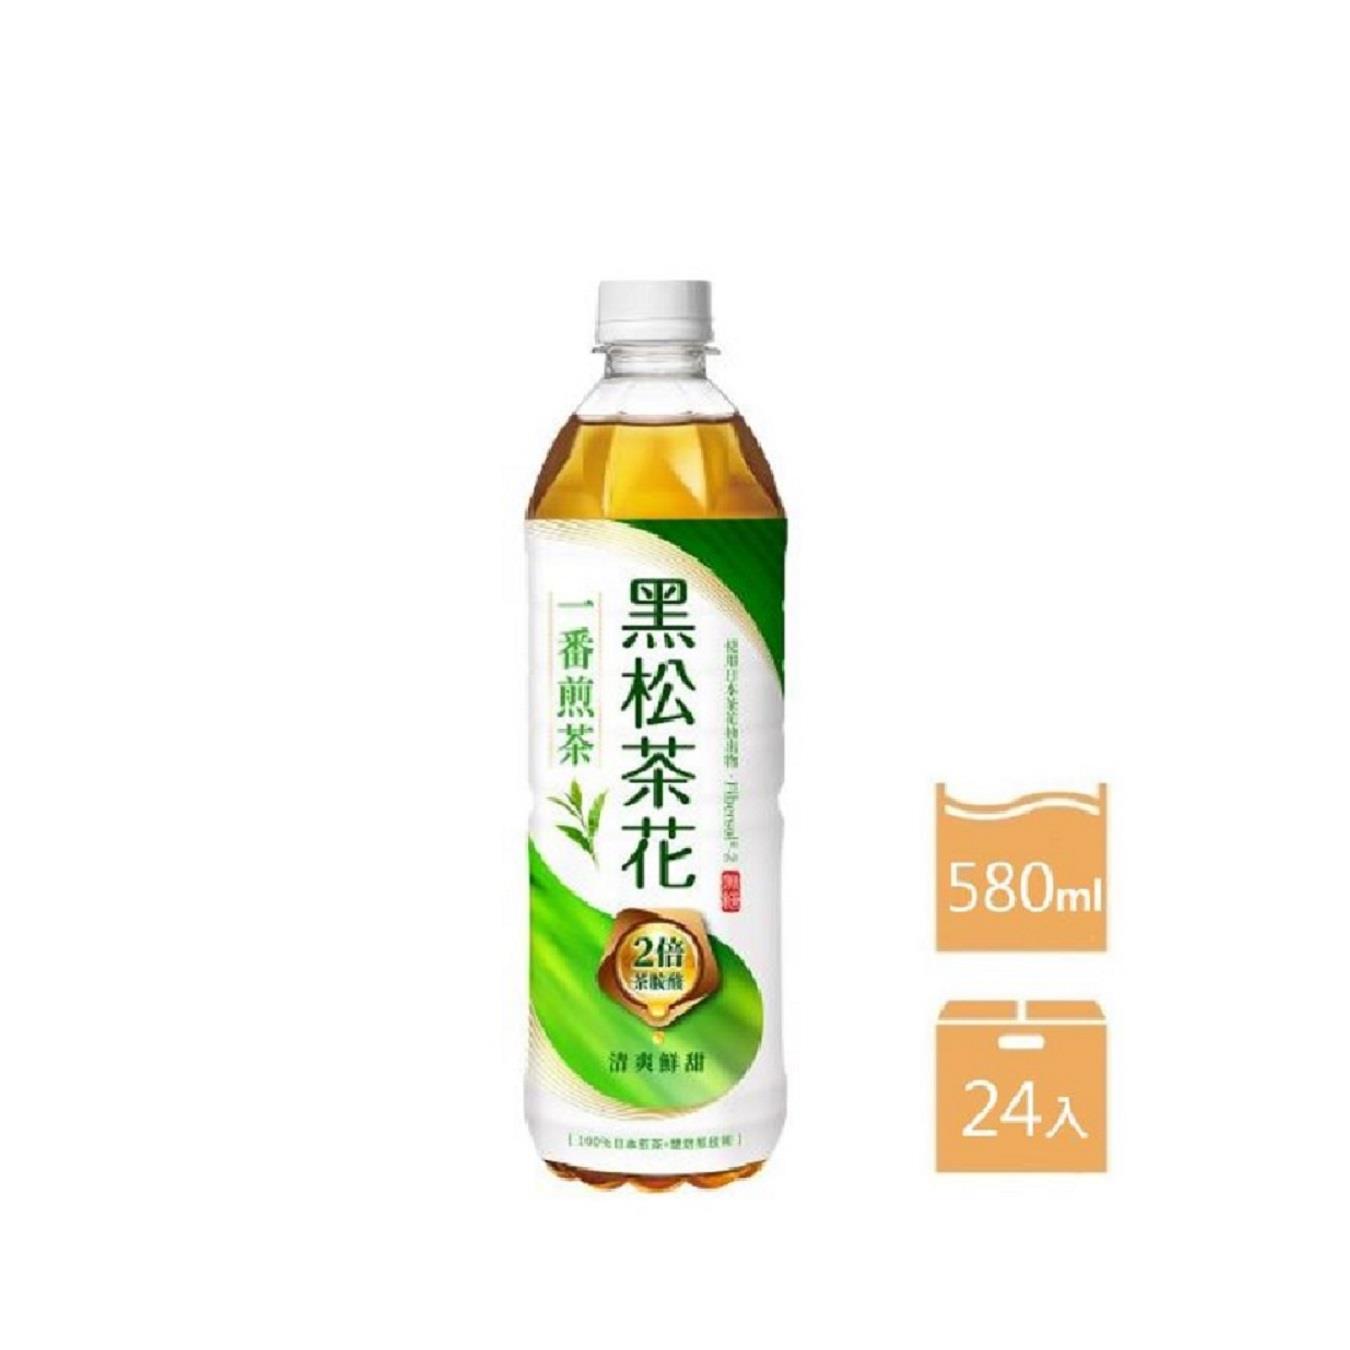 【黑松】箱購黑松茶花一番煎茶(580mlx24)